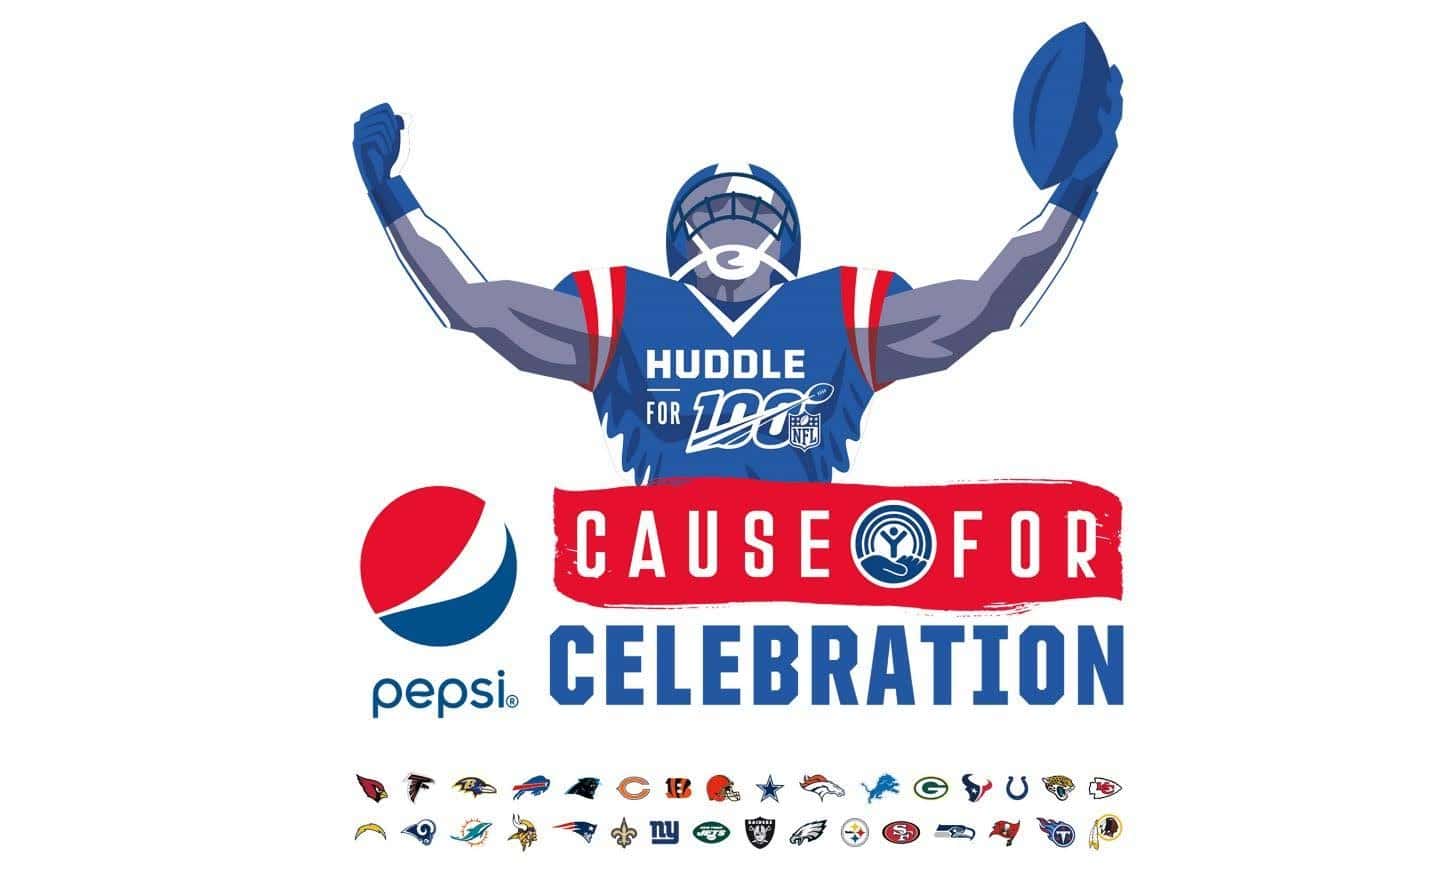 Pepsi and NFL strategic partnership marketing